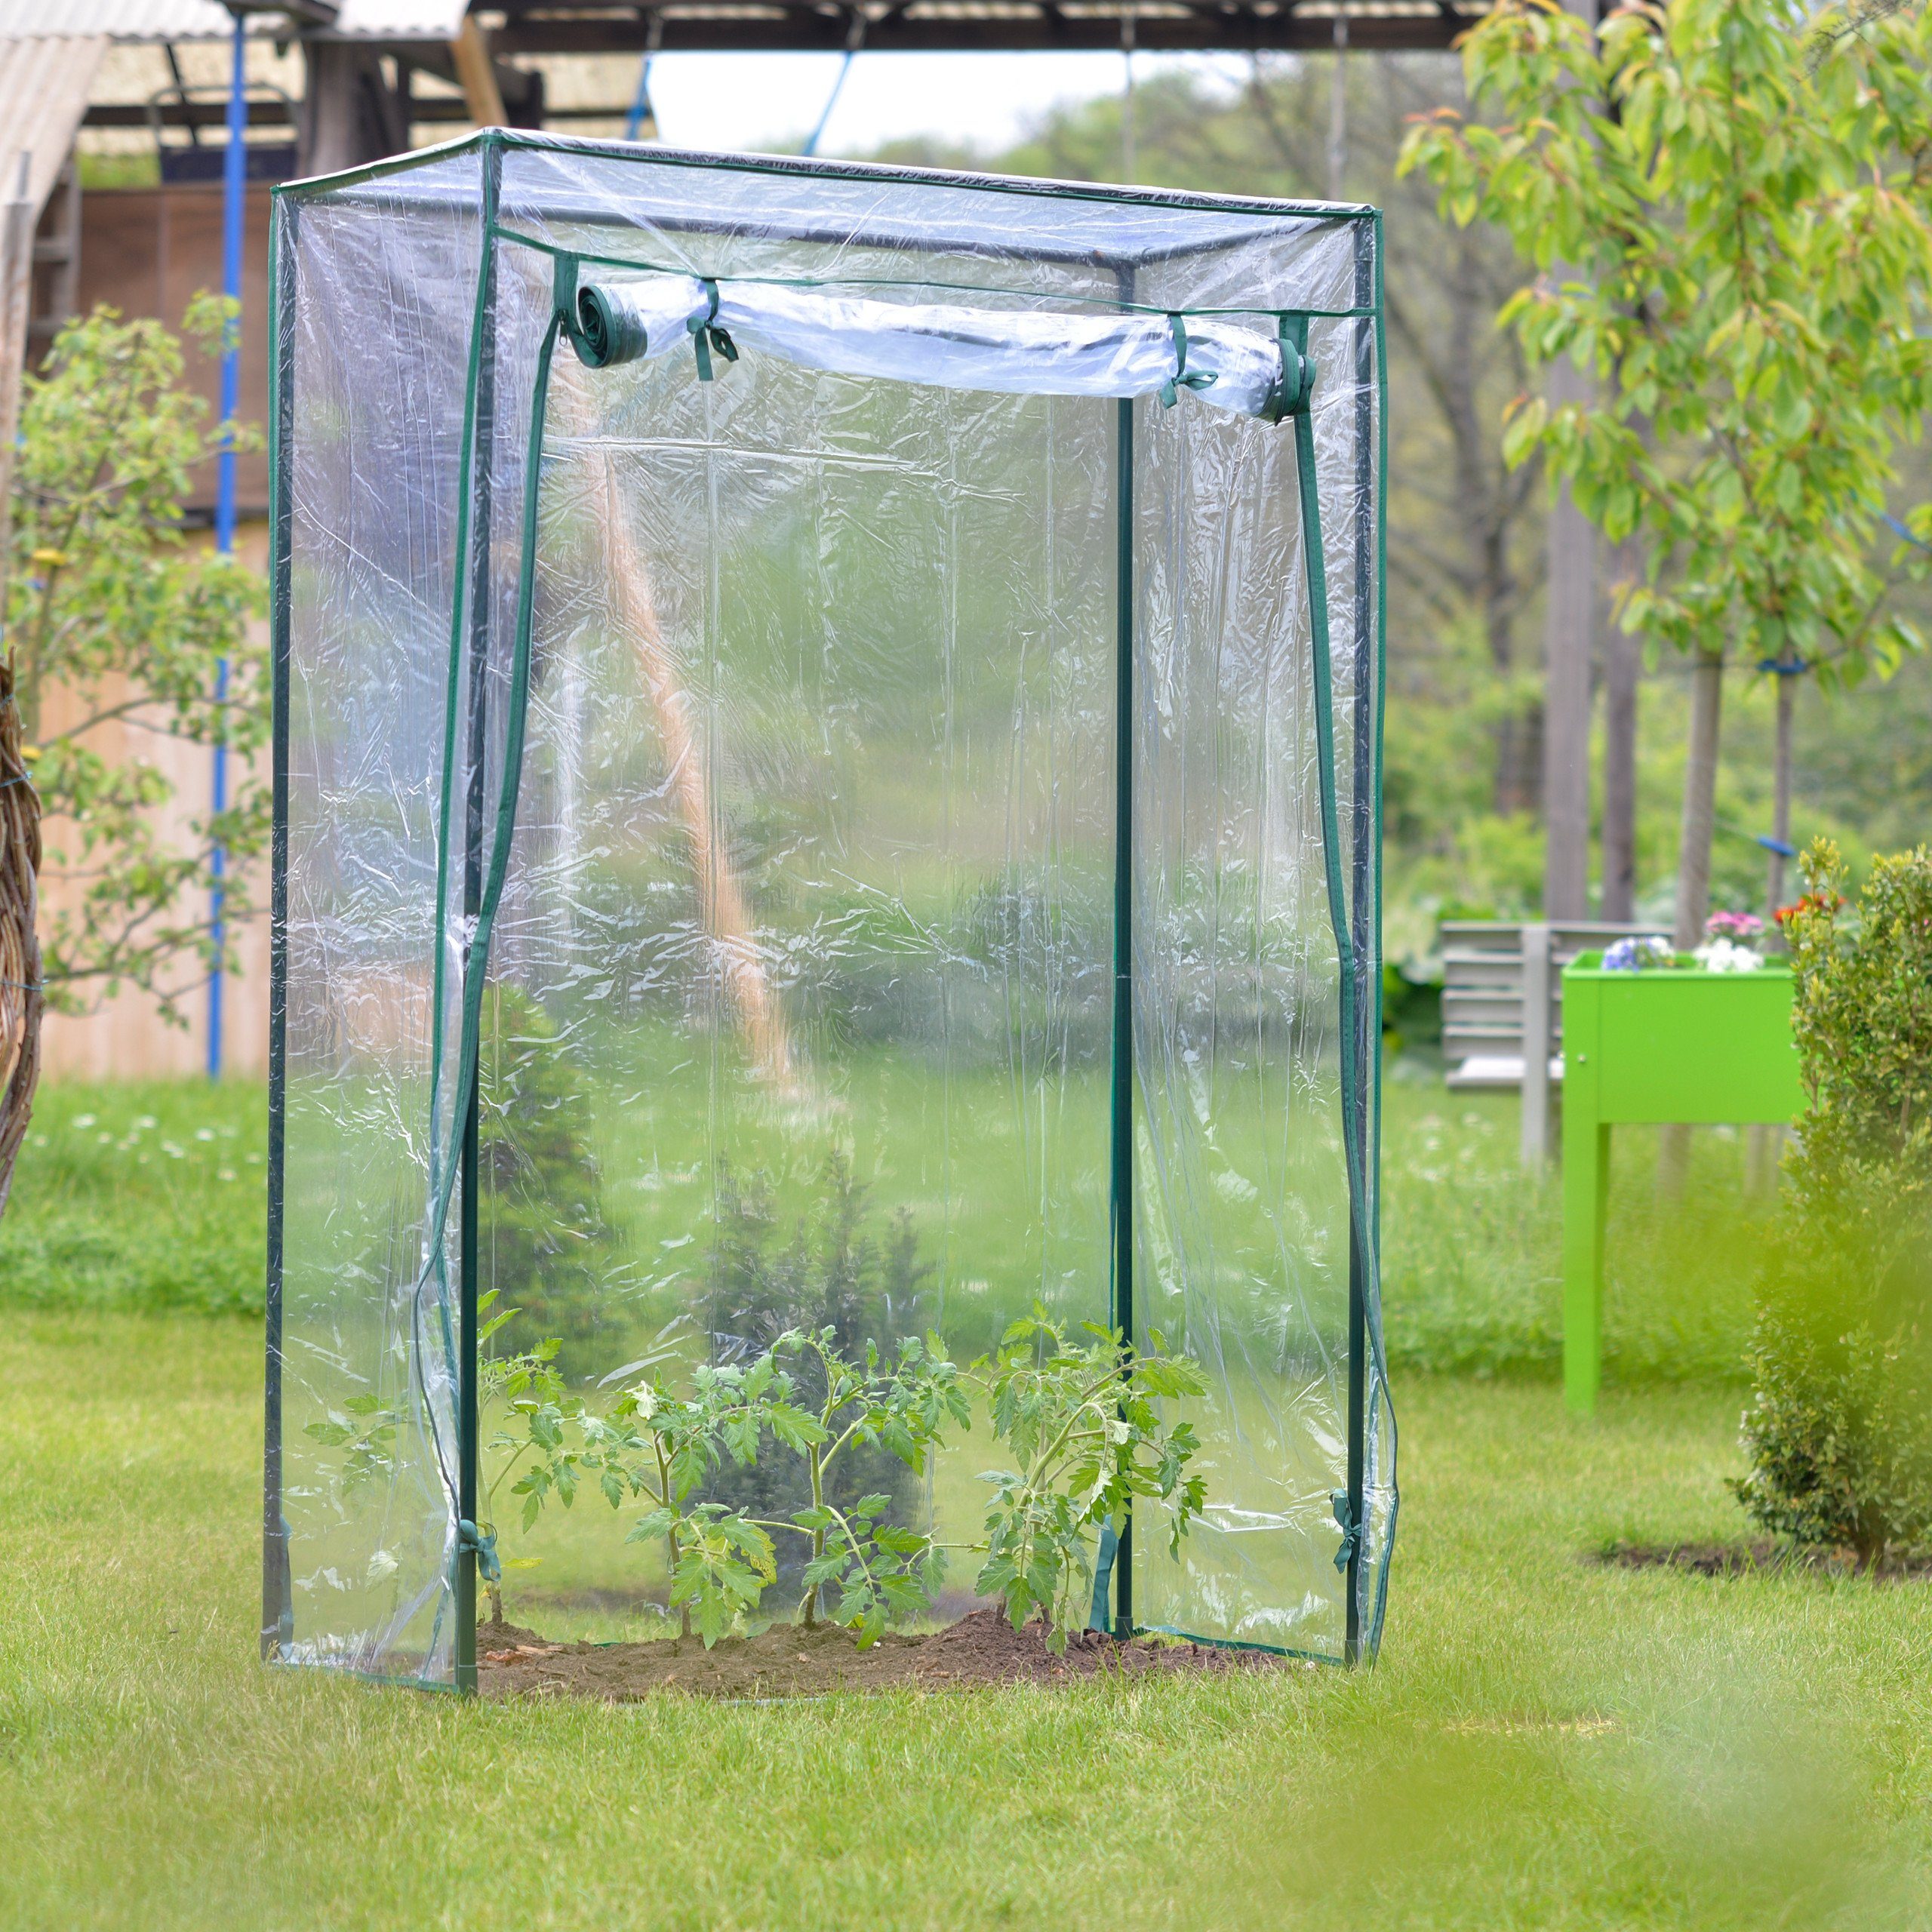 basisago Insect-Proof Zelt für Pflanzen-Gewächshaus Kleines Gewächshaus Garten Balkon Terrasse Gewächshaus für Tomaten im Garten Verwendung im Blumentopf 